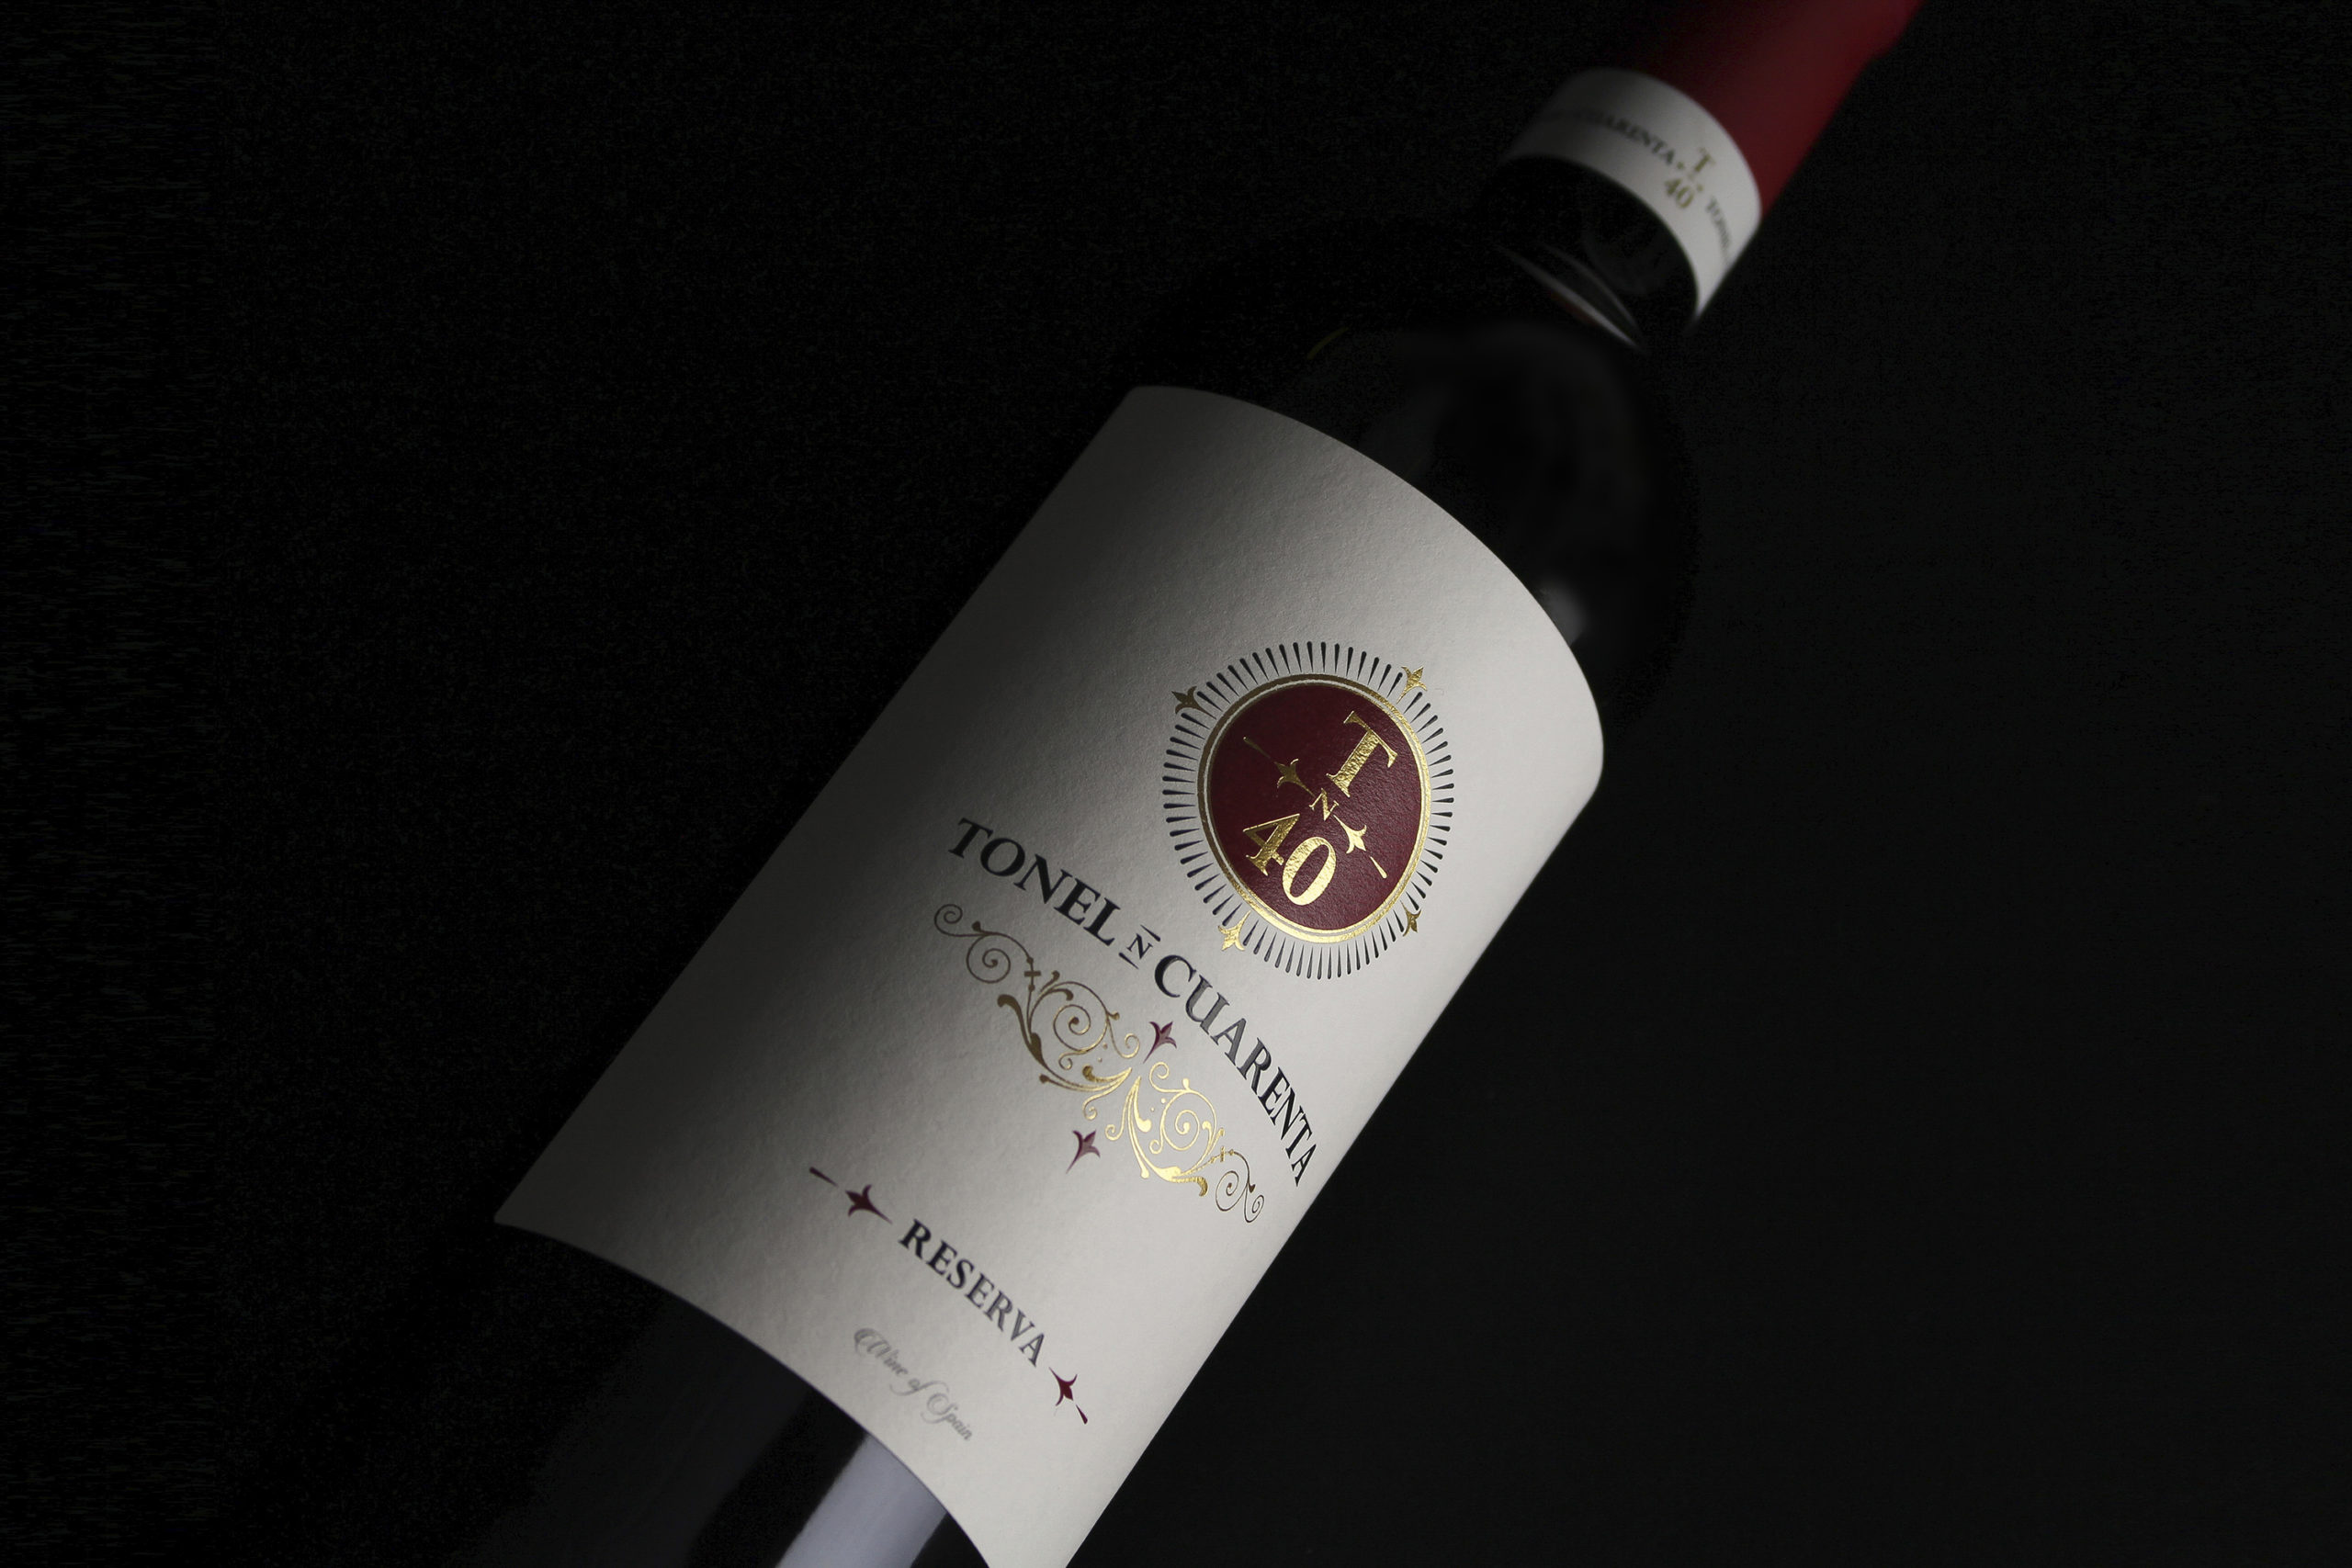 Design wine label tonel cuarenta reserva